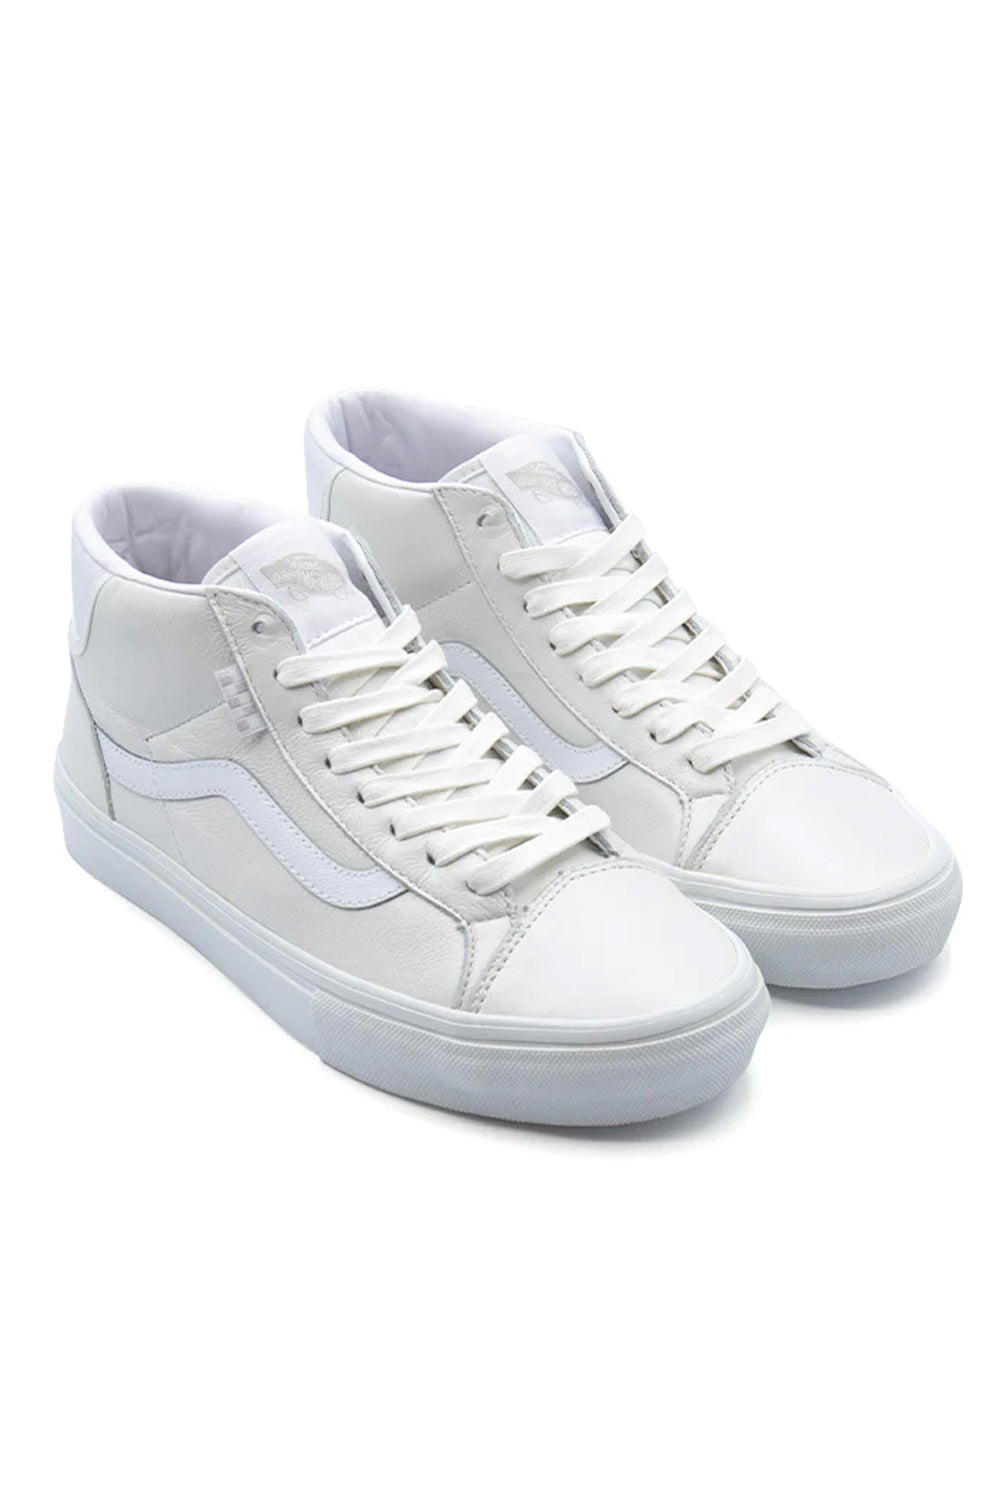 Vans Mid Skool (Skate) Shoe Pearl Leather White - BONKERS